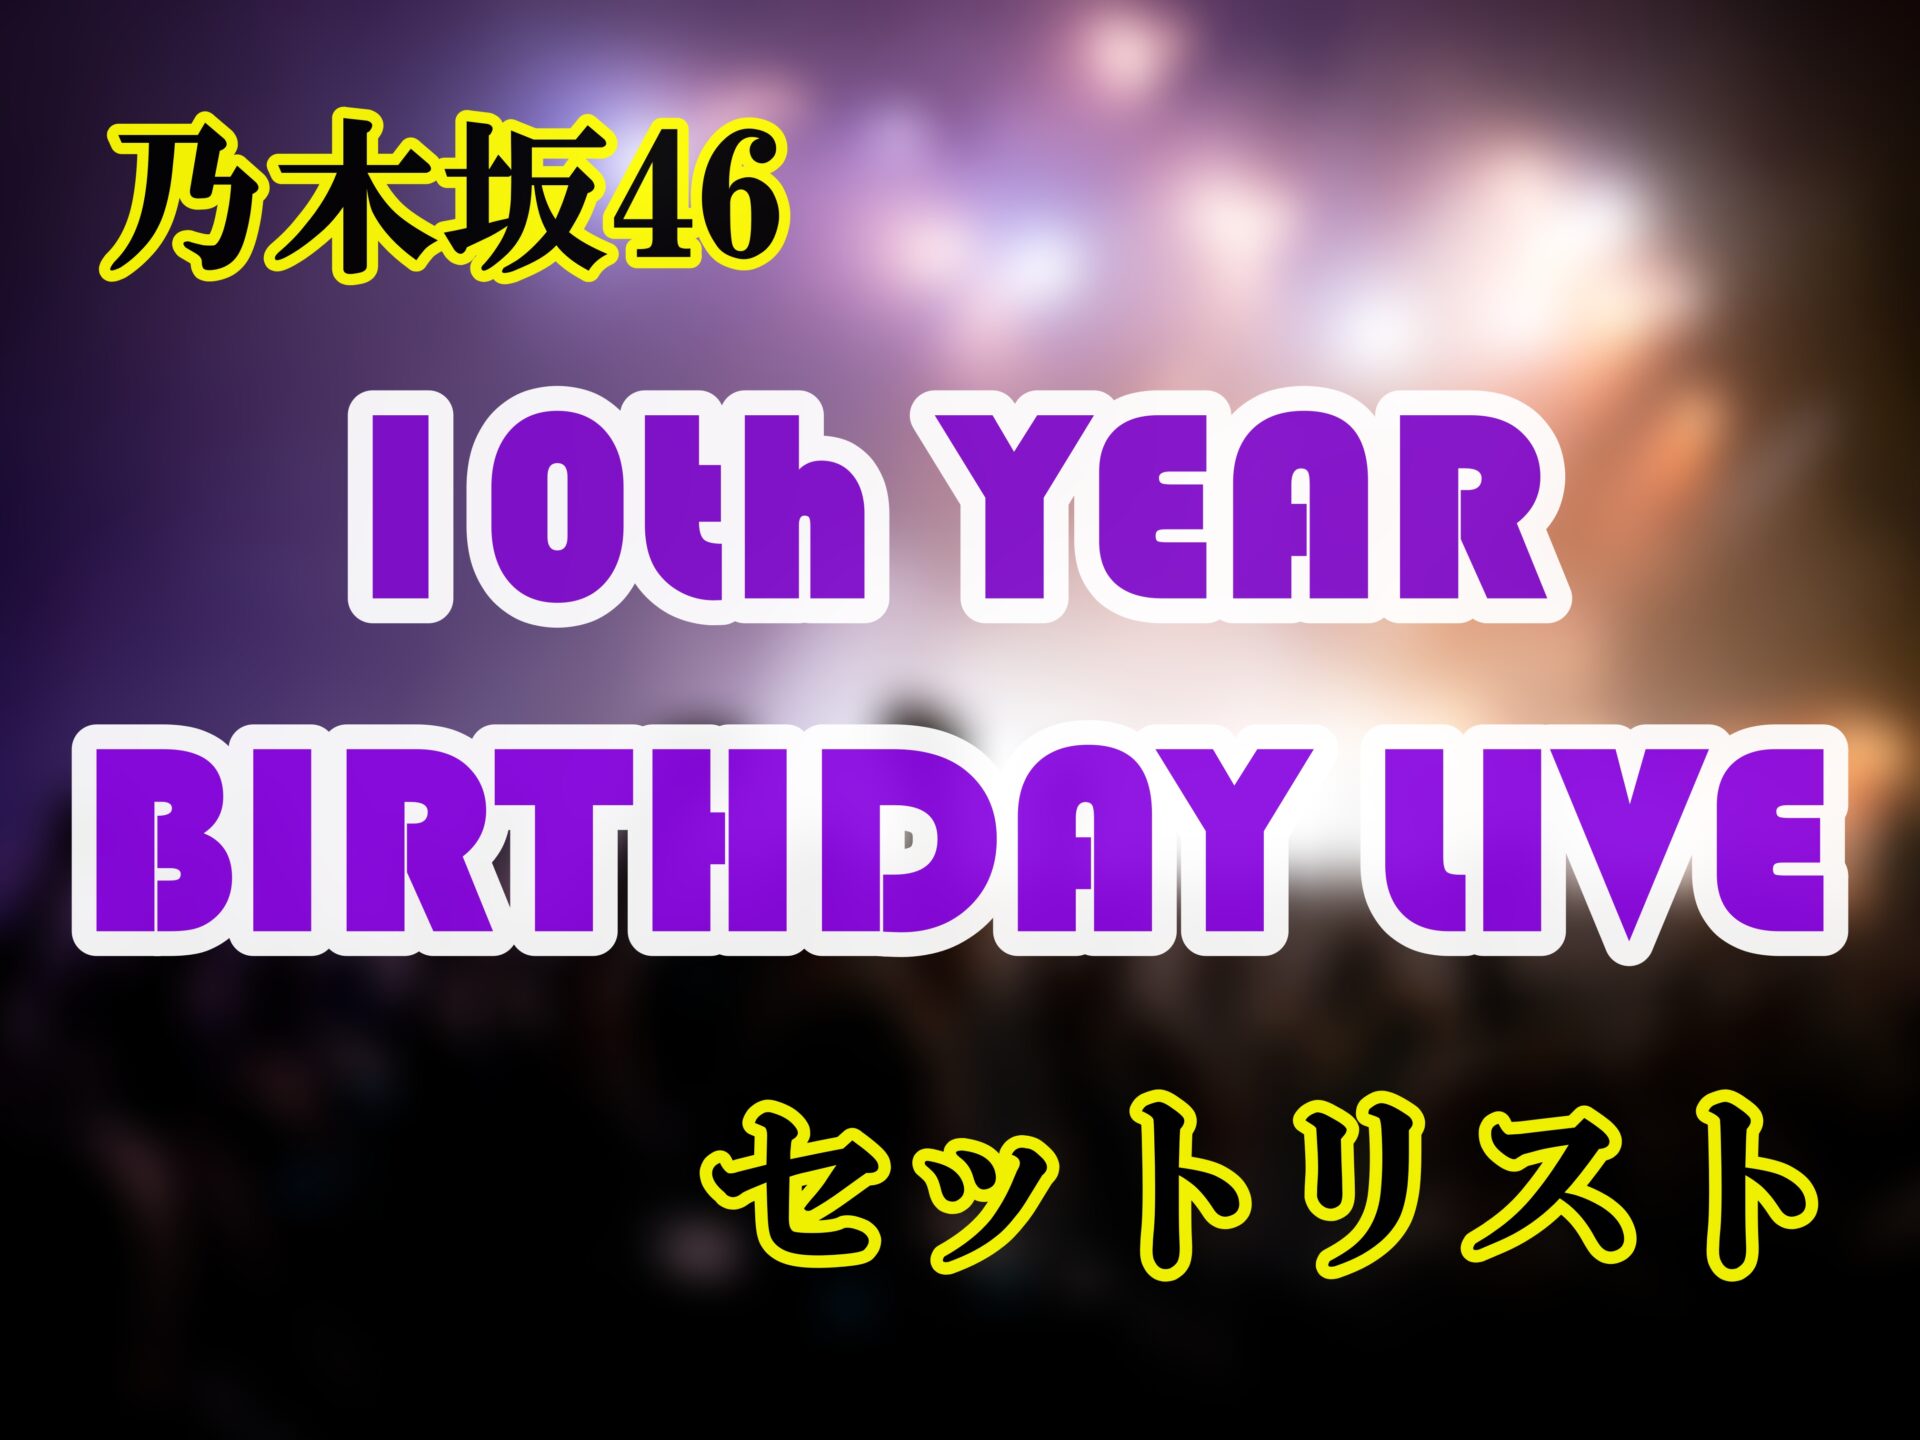 乃木坂46「10th YEAR BIRTHDAY LIVEセットリスト」サムネイル